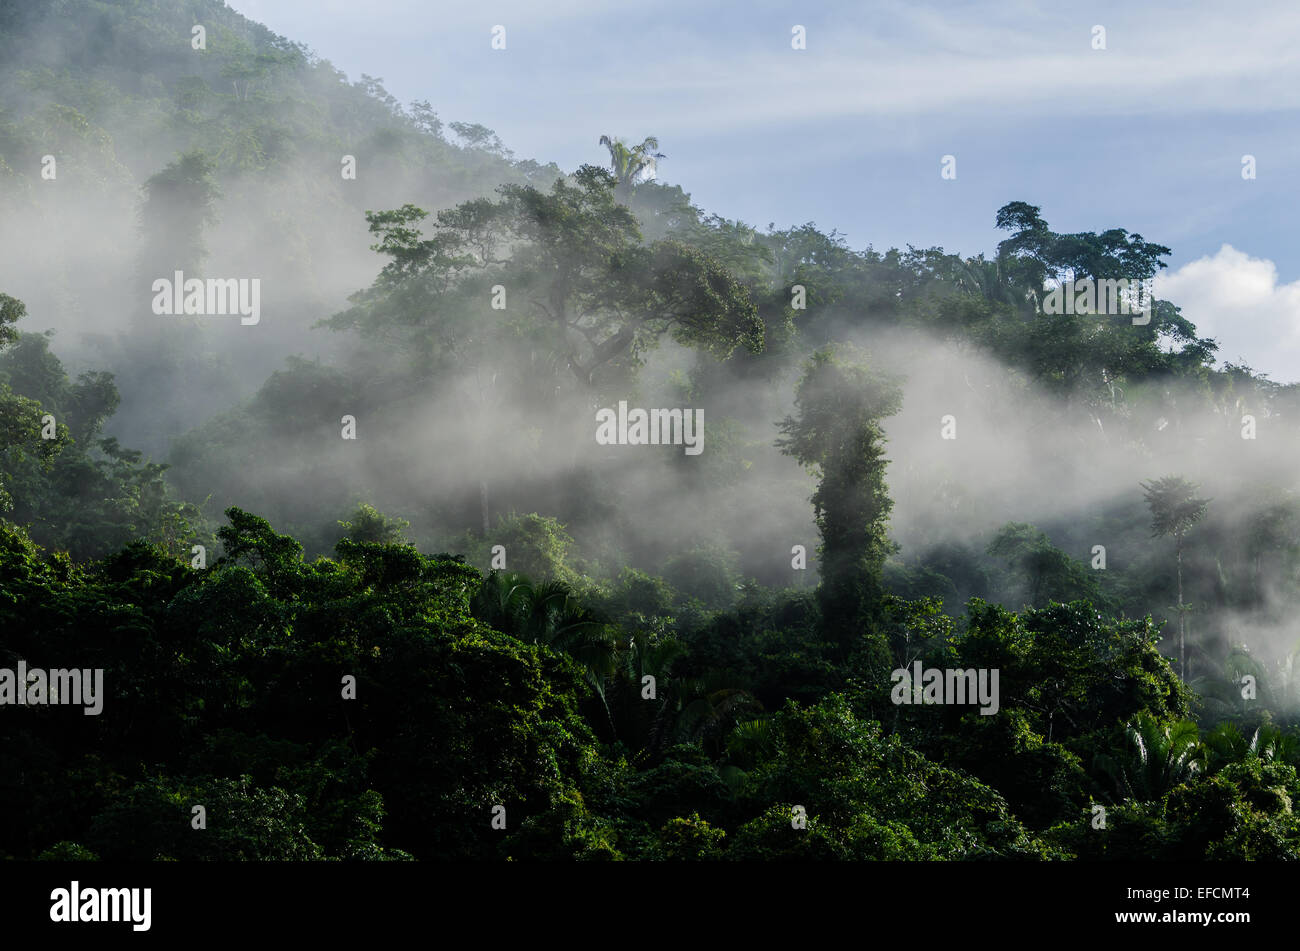 La luz de la mañana brilla en la niebla pasando del bosque tropical lluvioso. Belice, Centroamérica. Foto de stock